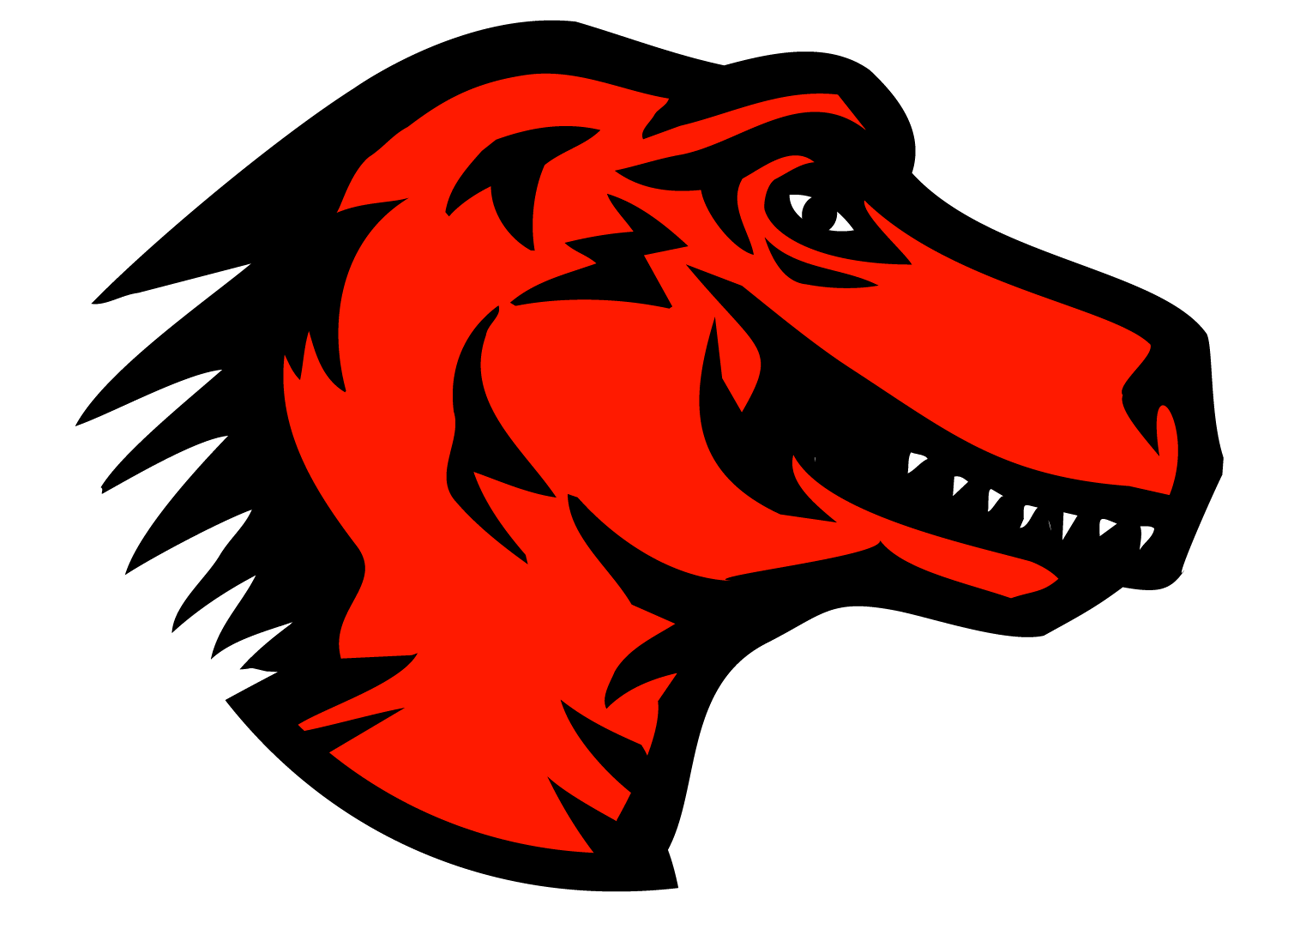 Mozzila Logo - File:Mozilla dinosaur head logo.png - Wikimedia Commons